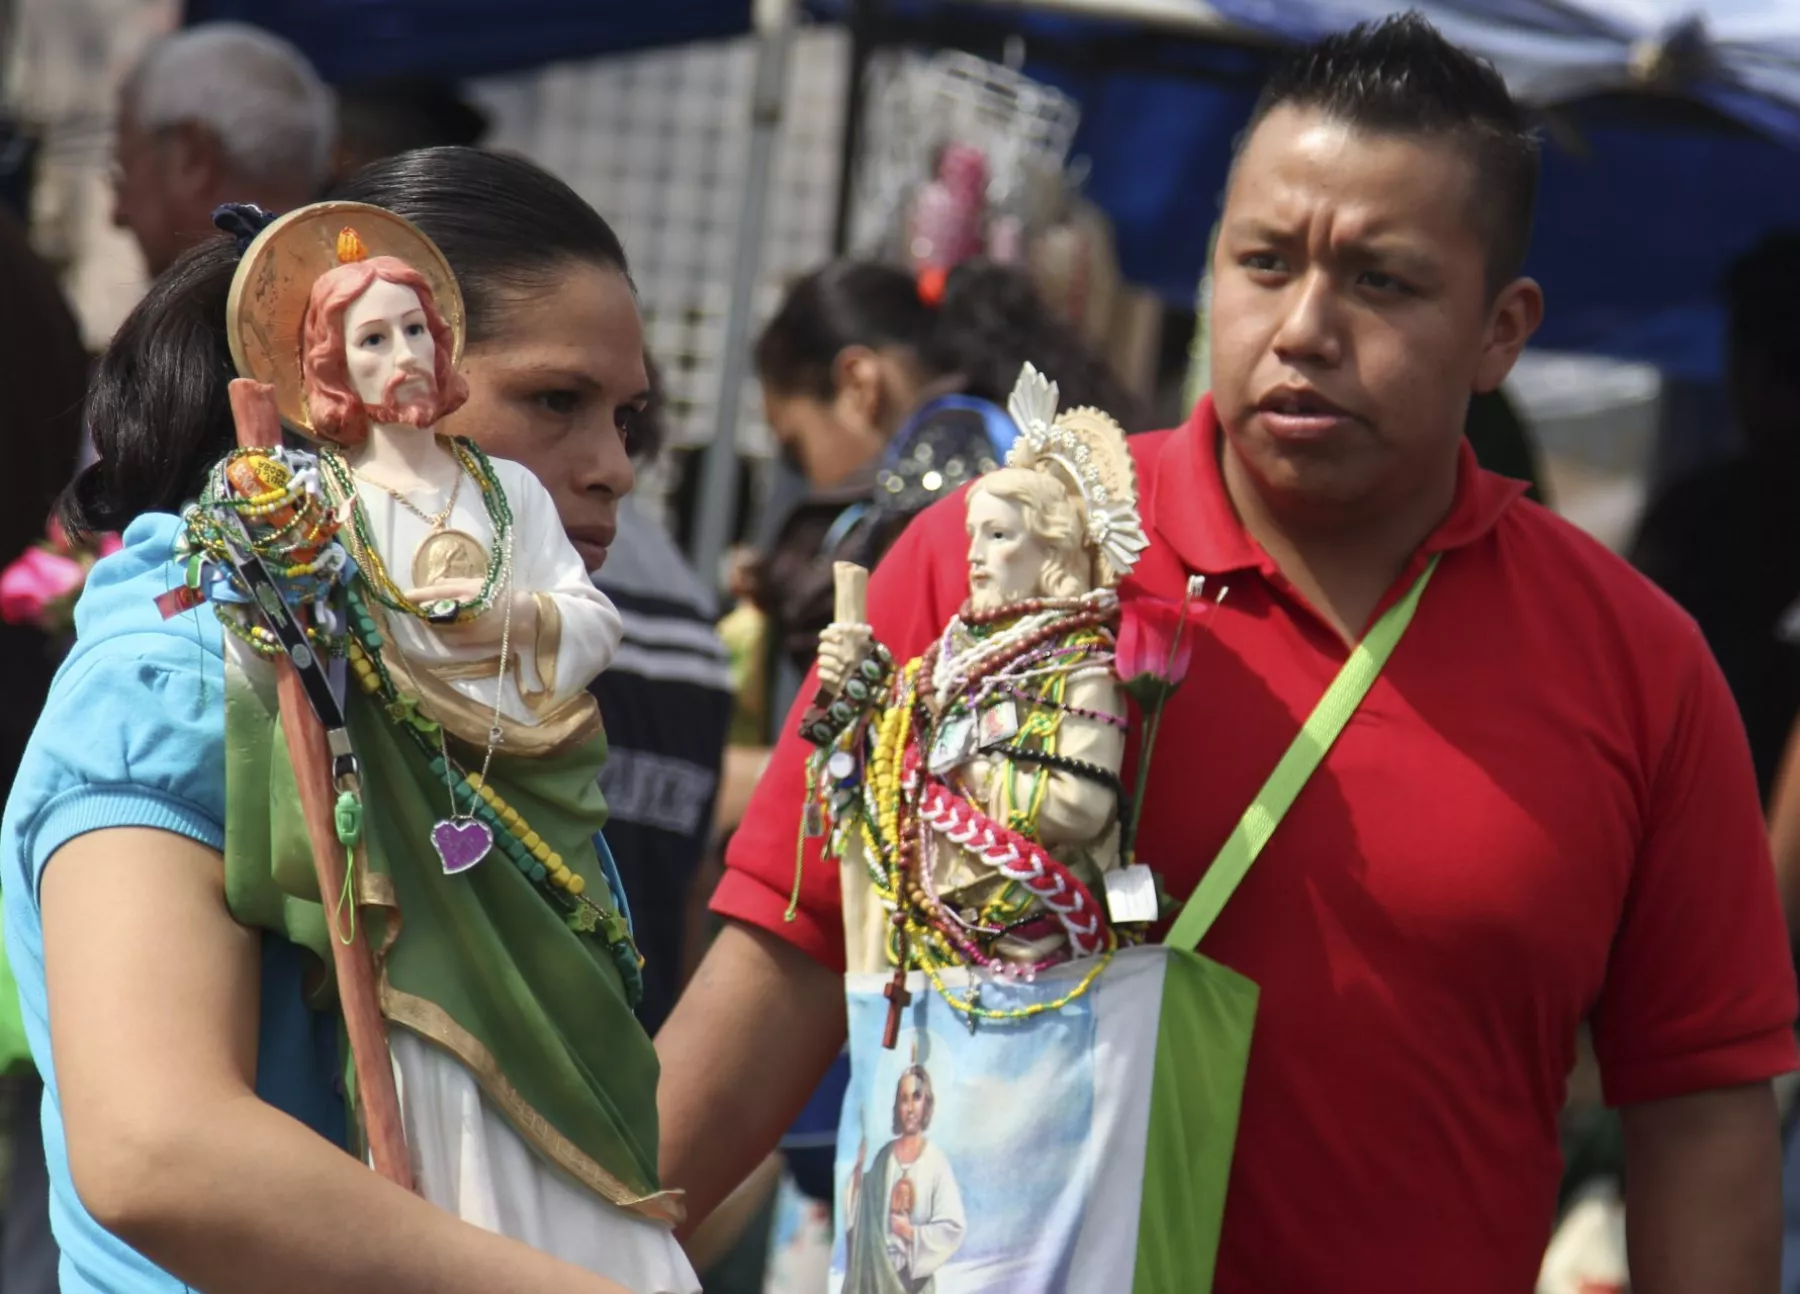 Miles festejan a San Judas Tadeo en Ciudad de México | MEGANOTICIAS